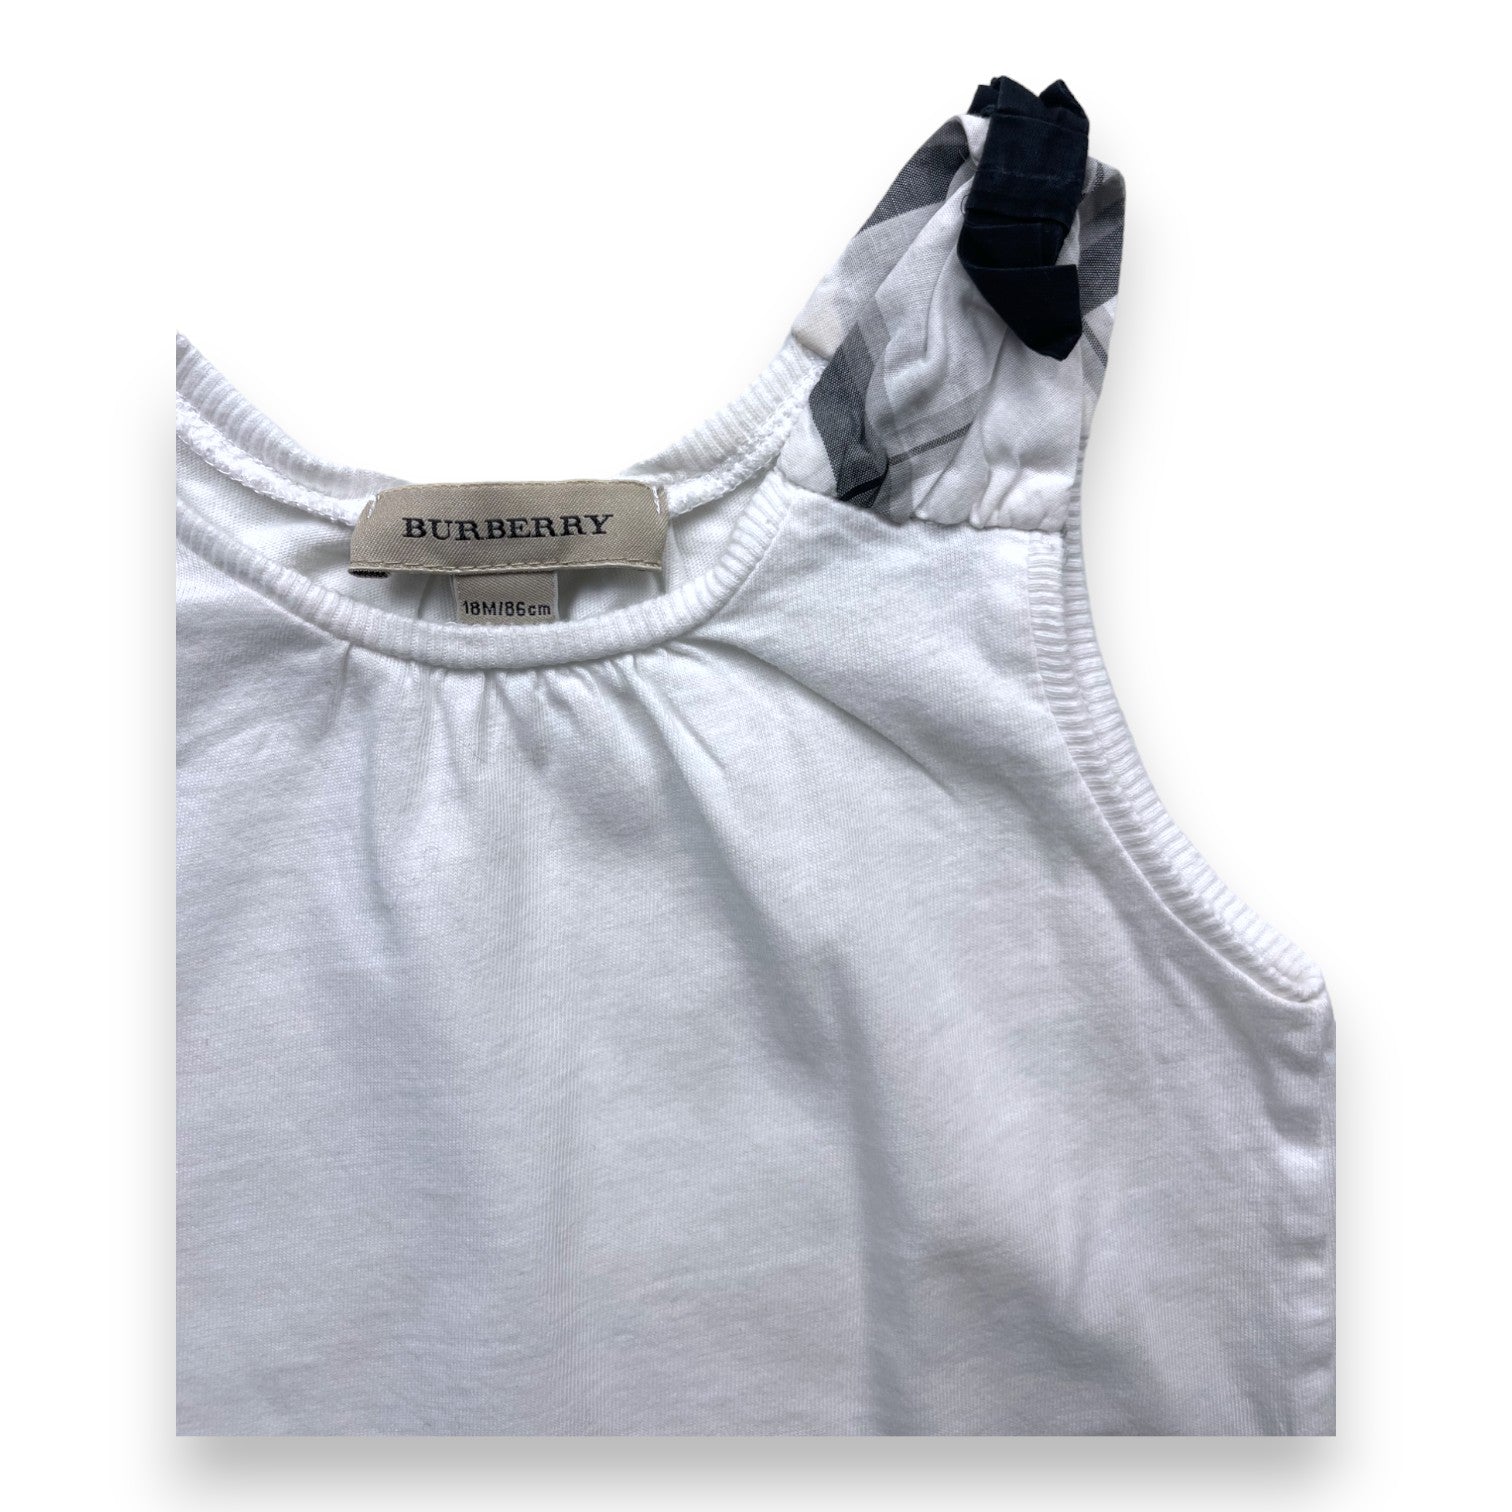 BURBERRY - Débardeur blanc bretelles à carreaux noirs - 18 mois